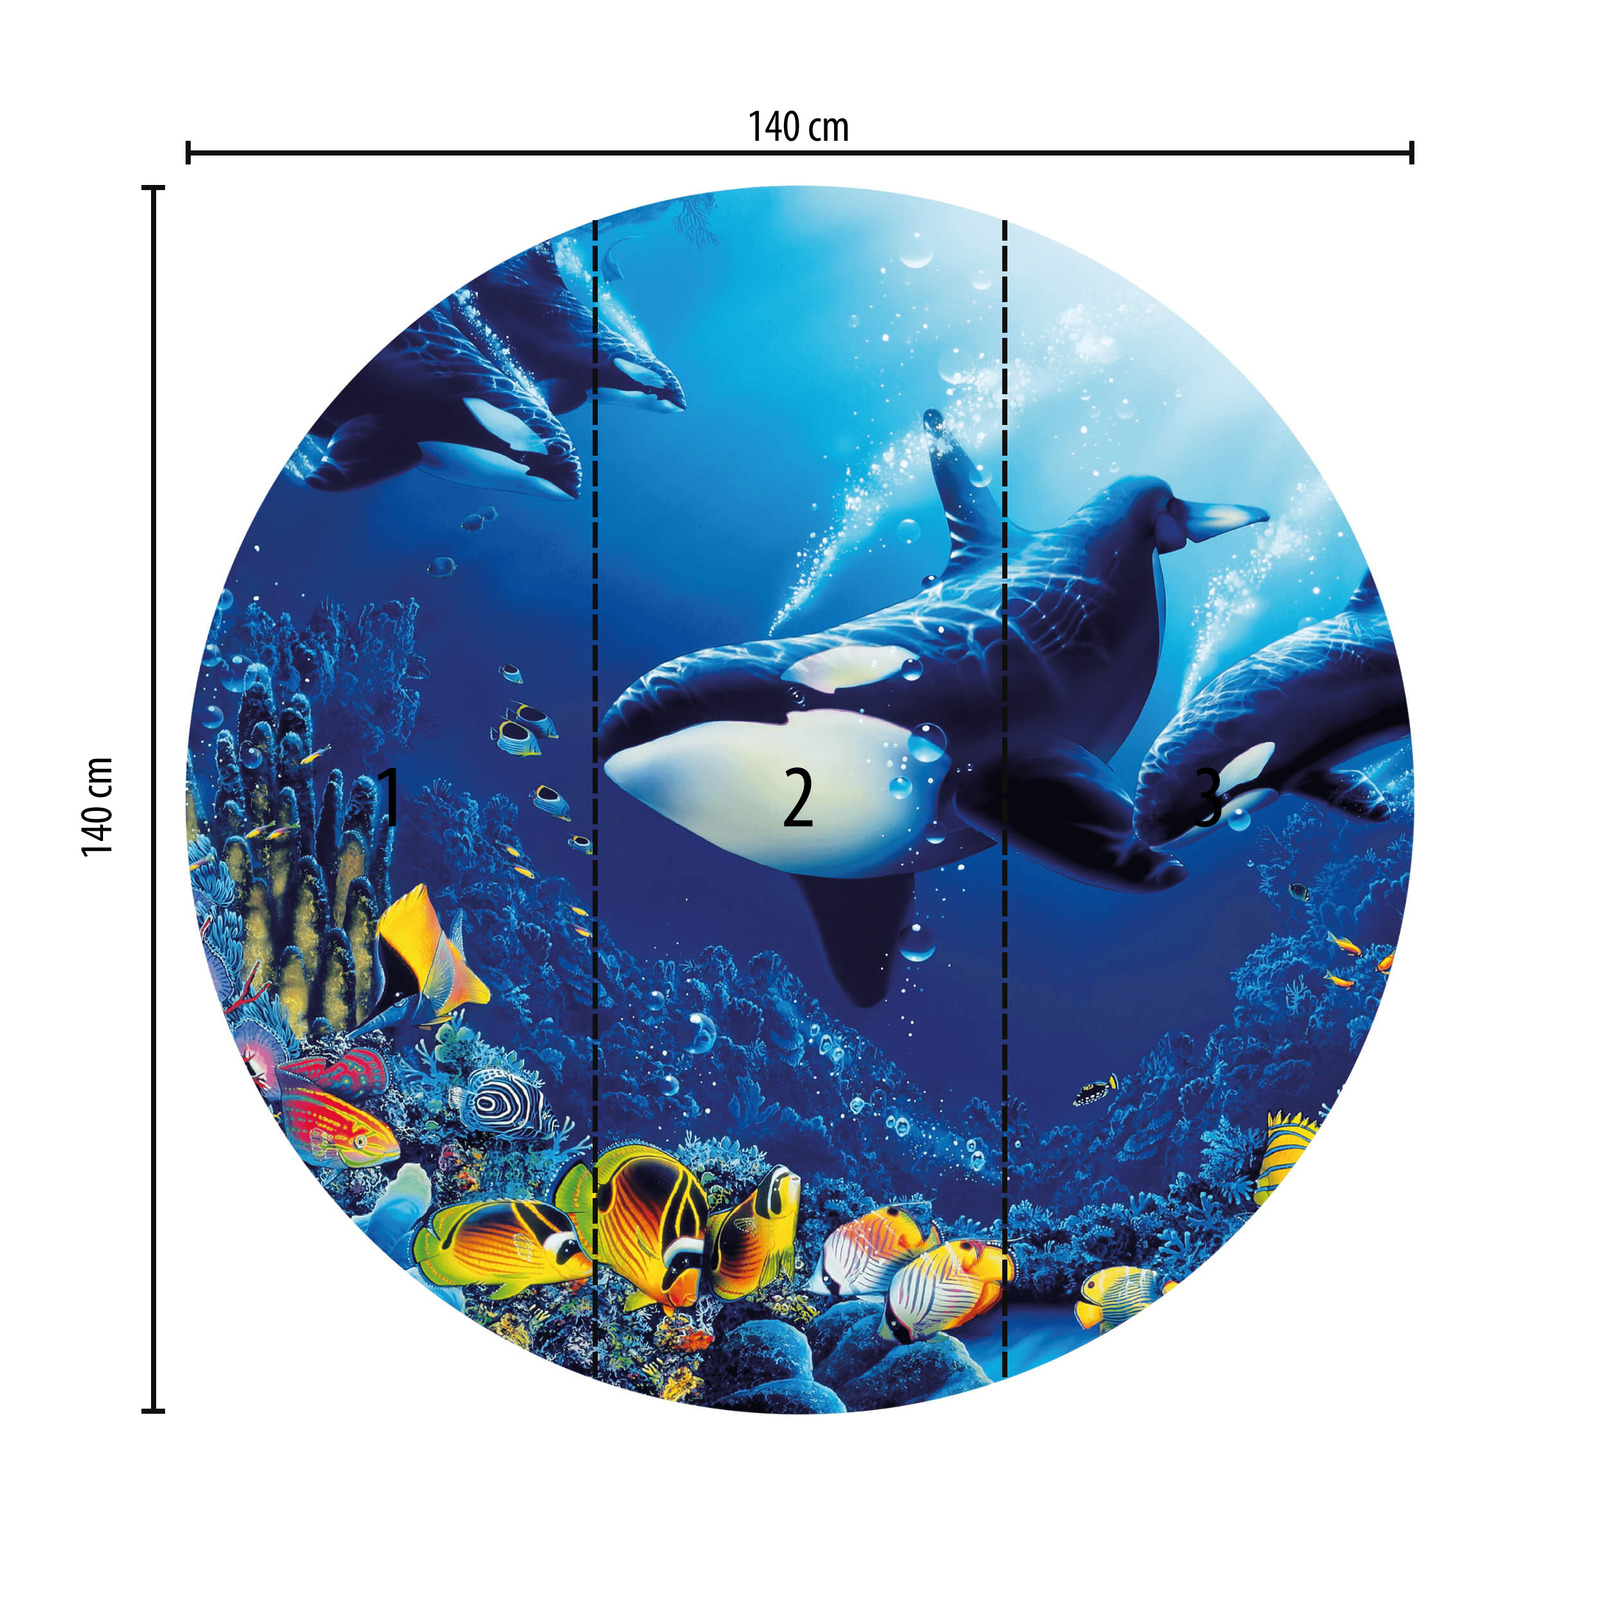             Papier peint panoramique rond avec monde sous-marin et baleines
        